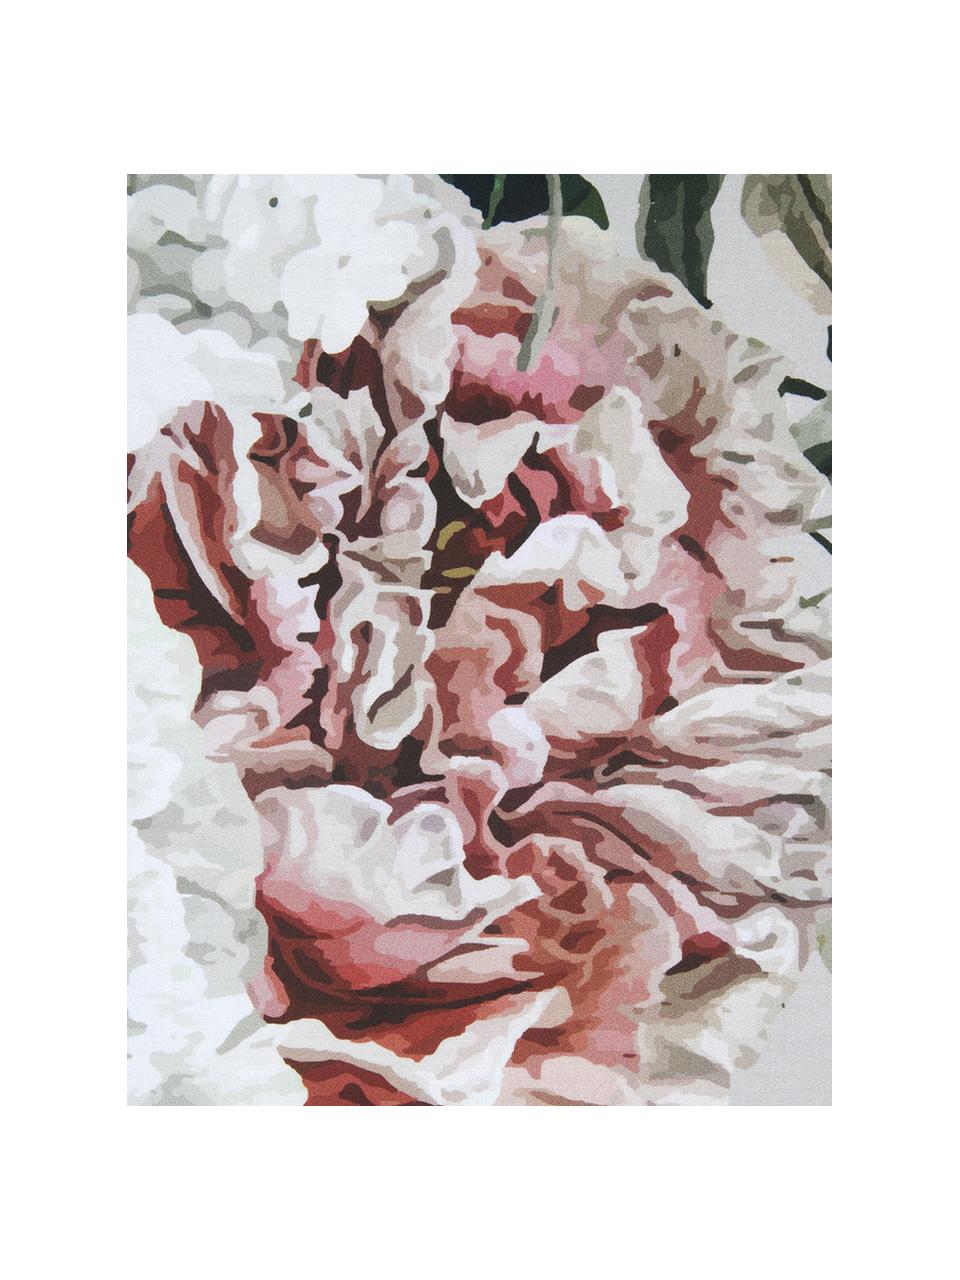 Parure copripiumino in raso di cotone Blossom, Grigio con stampa floreale, 155 x 200 cm + 1 federa 50 x 80 cm